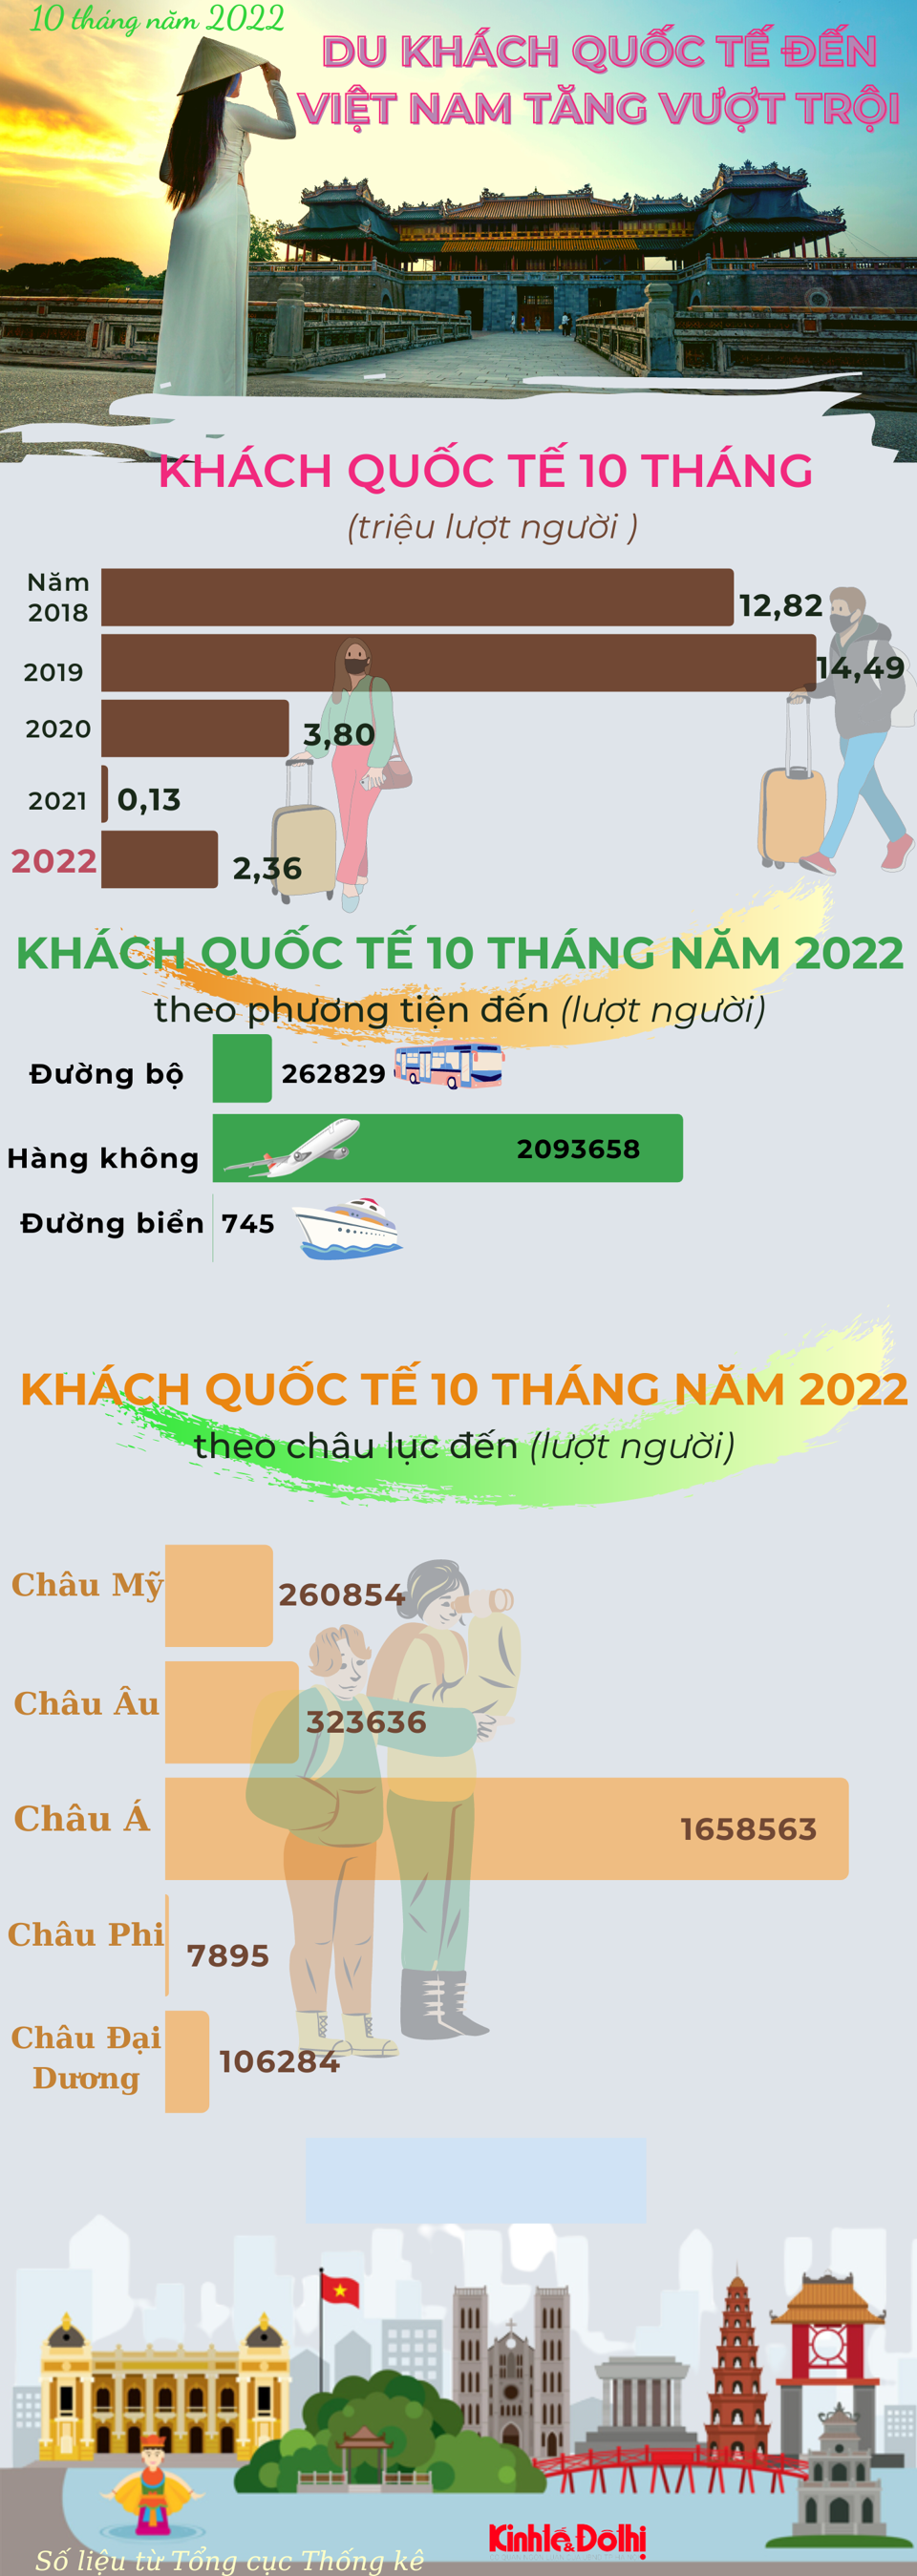 Lượng du khách quốc tế đến Việt Nam tăng vượt trội - Ảnh 1